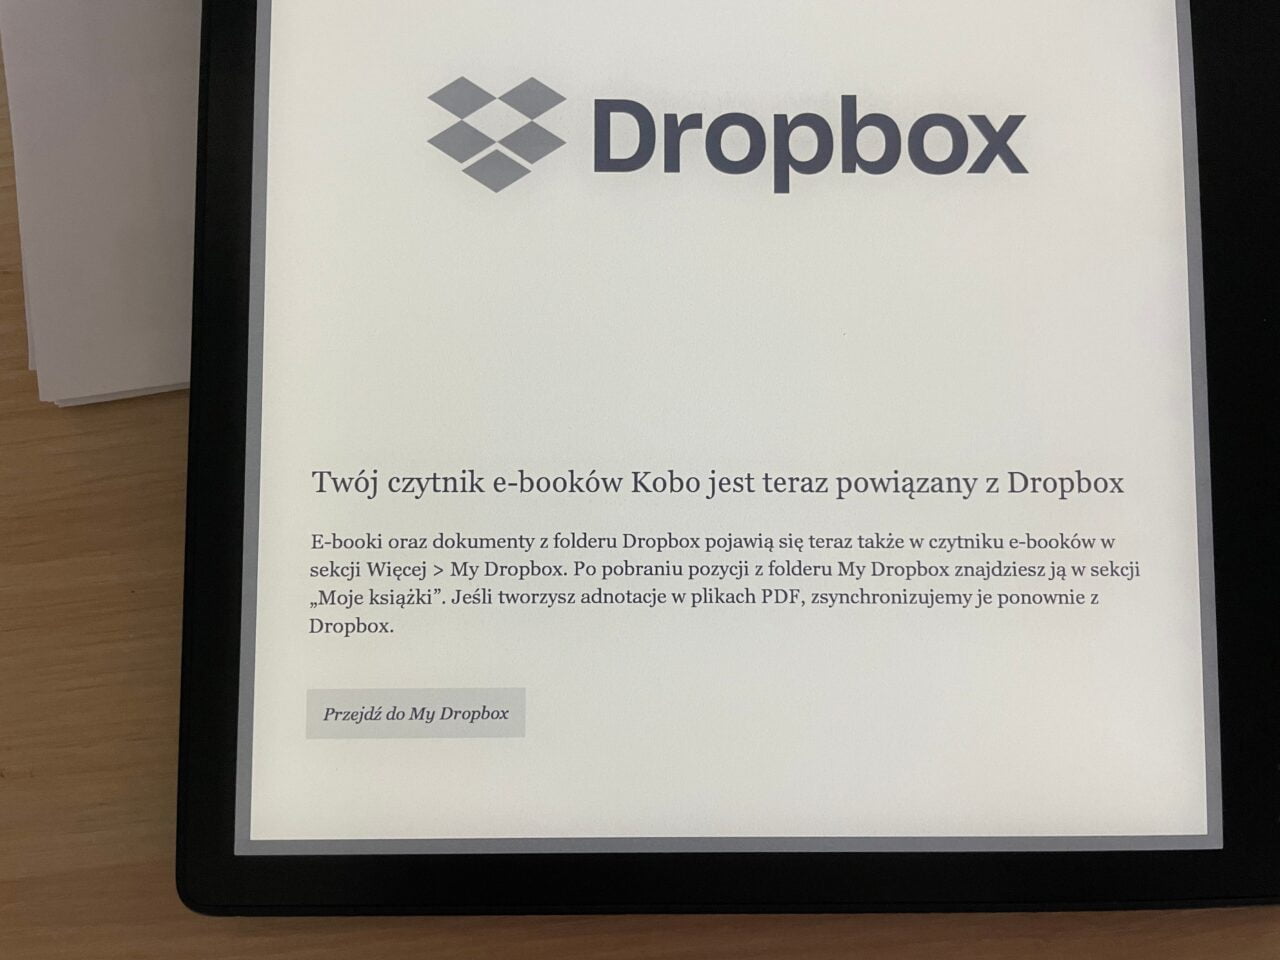 Czytnik e-booków Kobo wyświetlający informację o integracji z Dropbox oraz przycisk "Przejdź do My Dropbox".